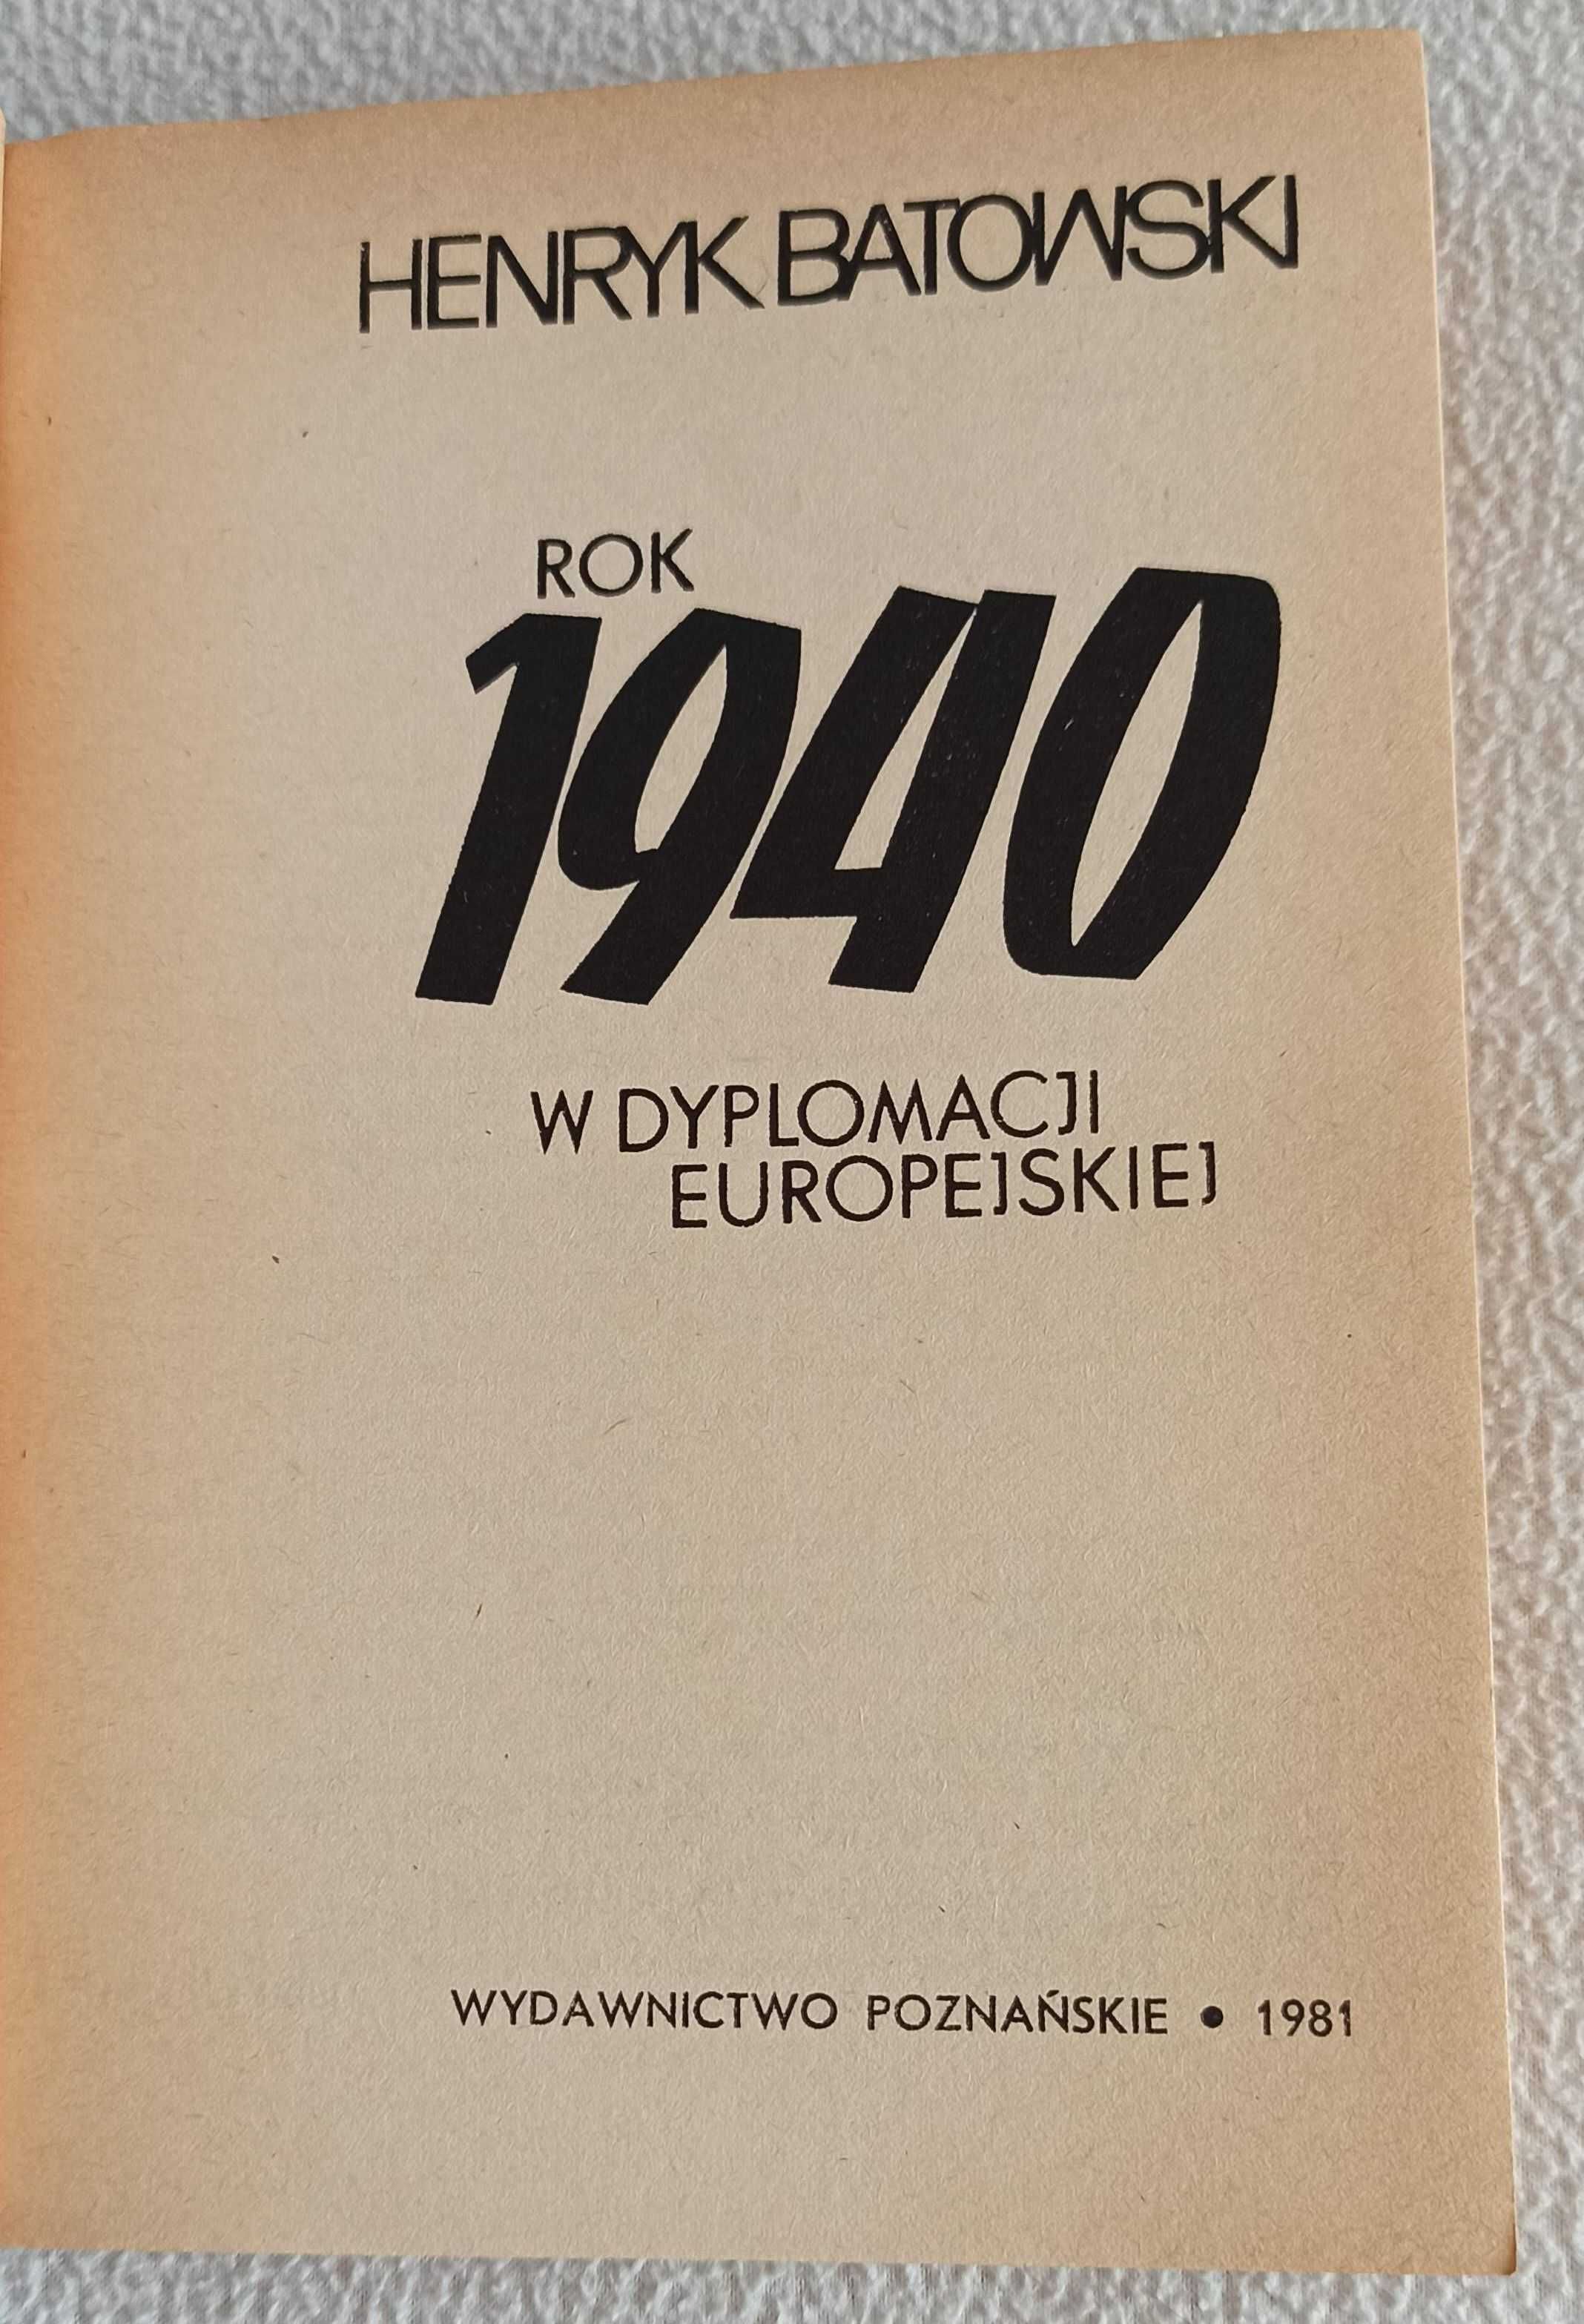 Henryk Batowski Rok 1940 w dyplomacji europejskiej - przed II WŚ